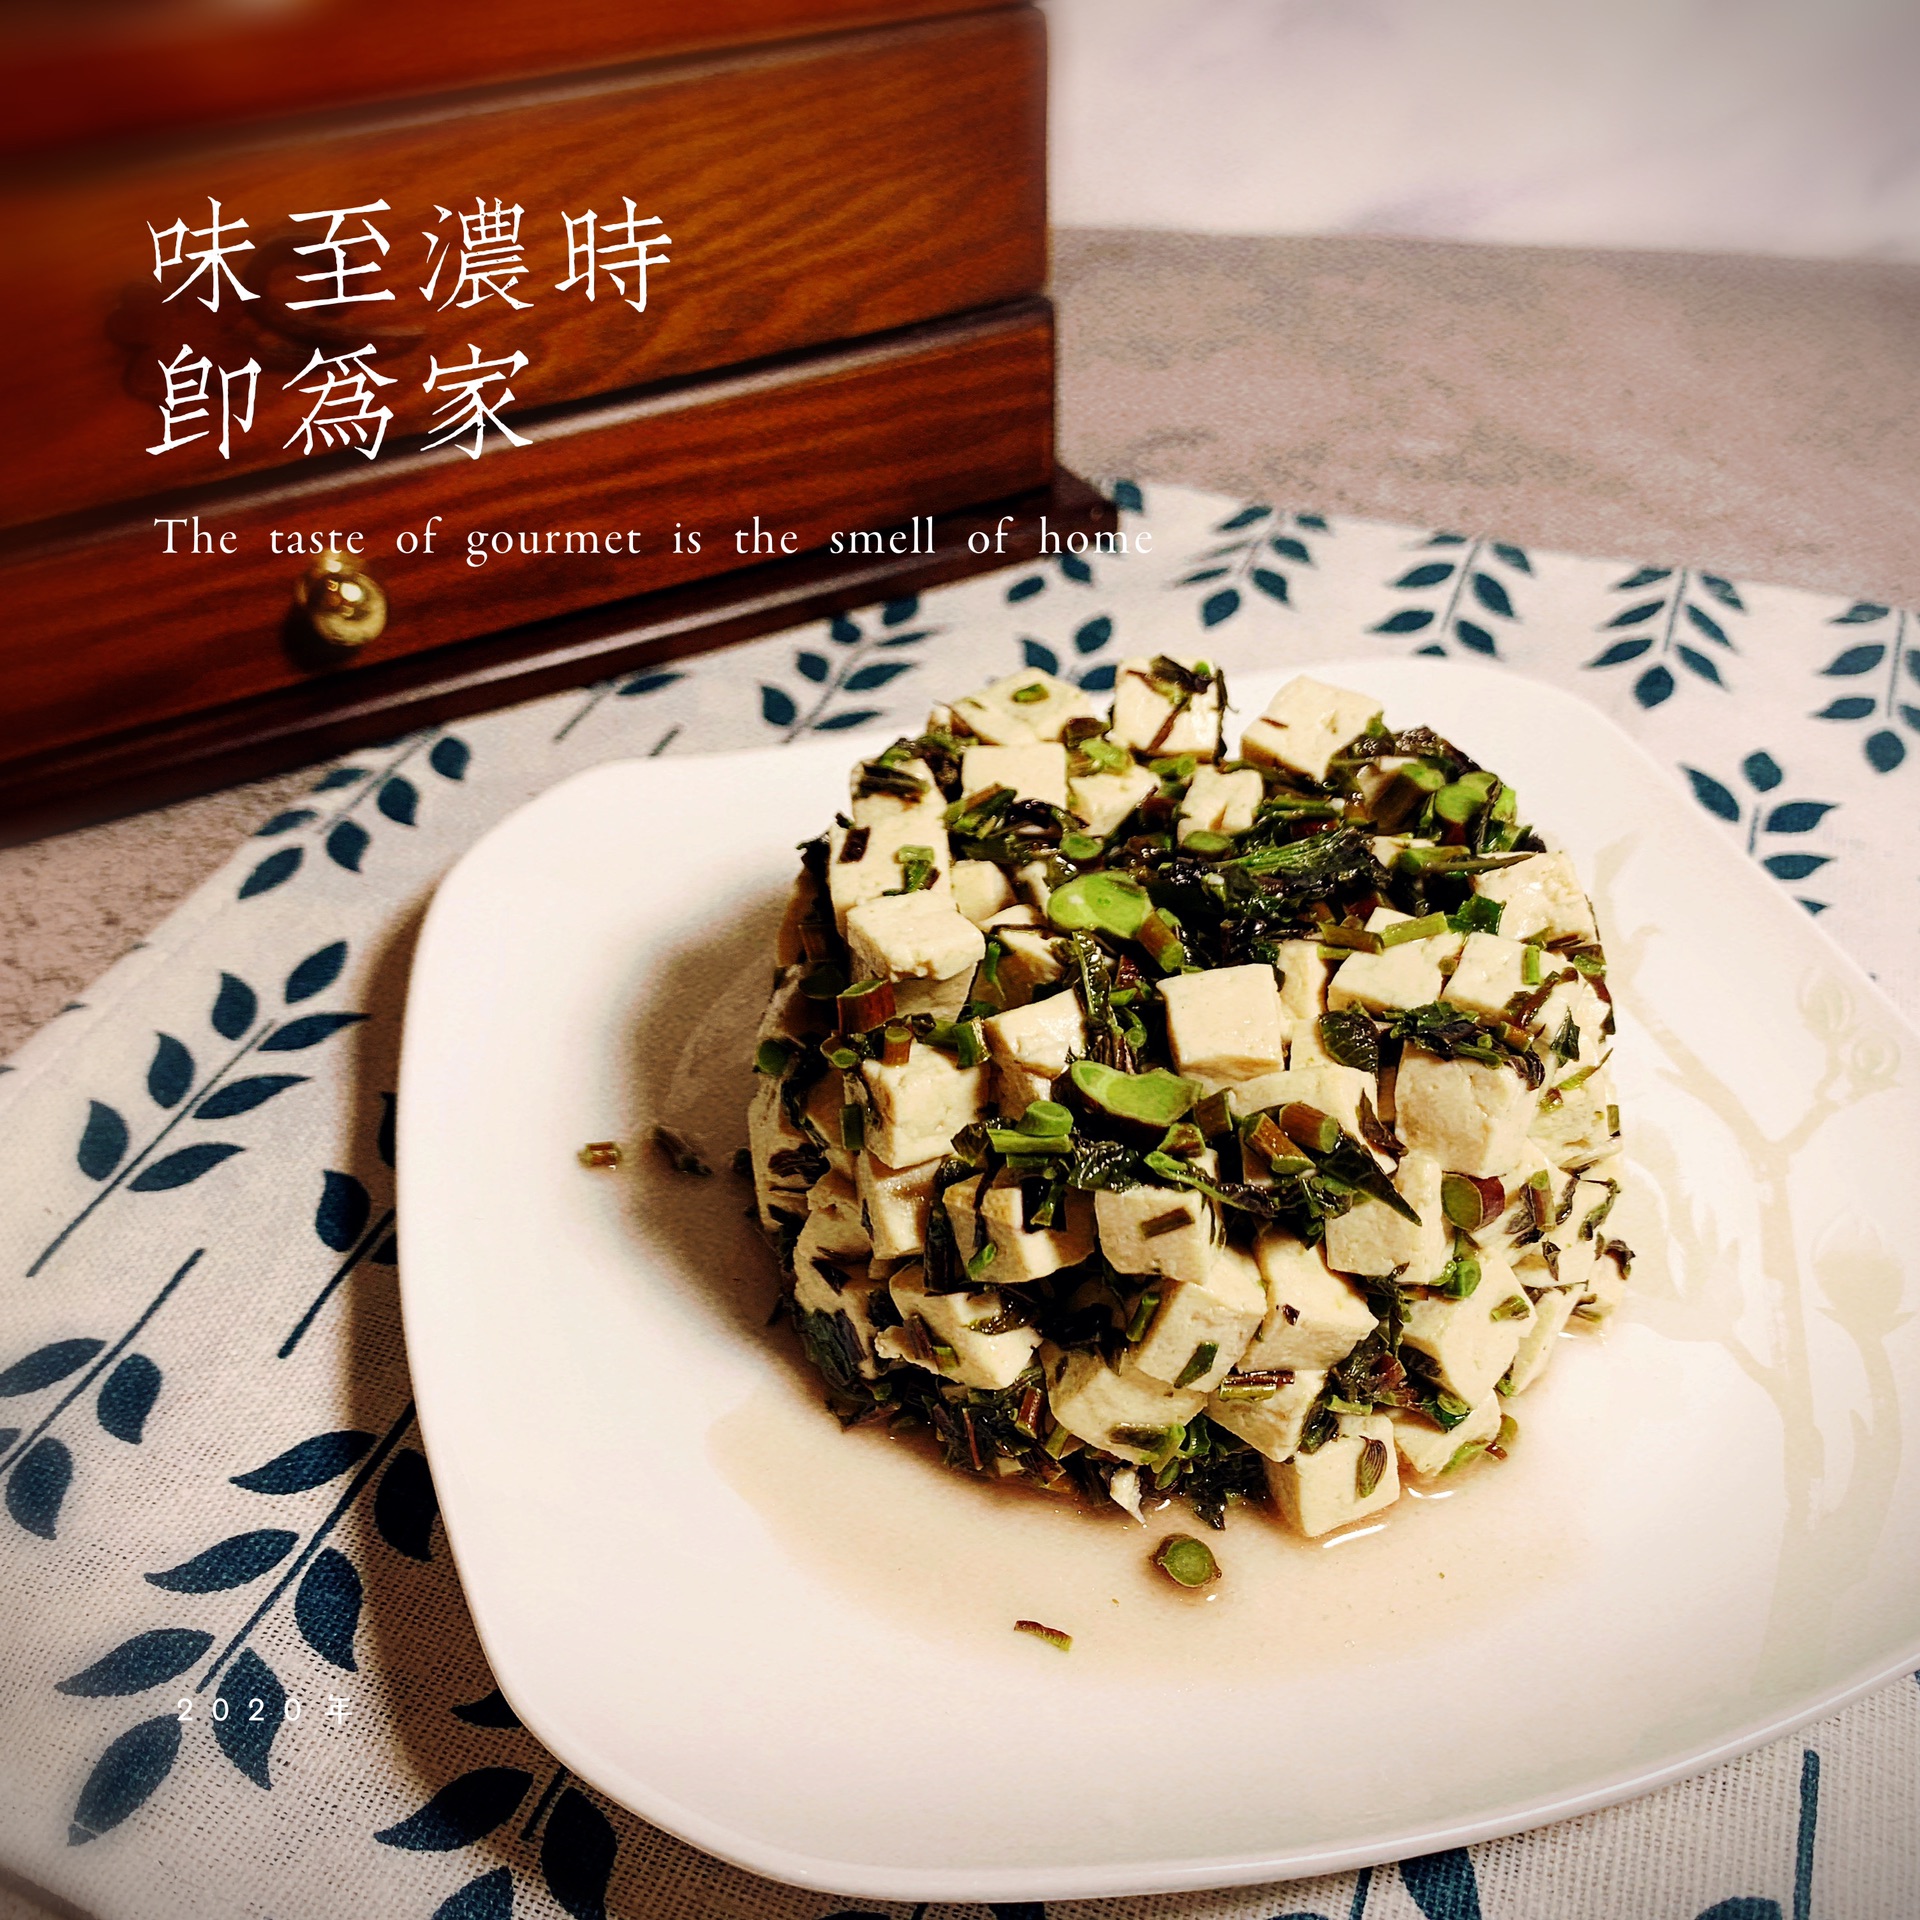 吃一口家的味道——香椿拌豆腐